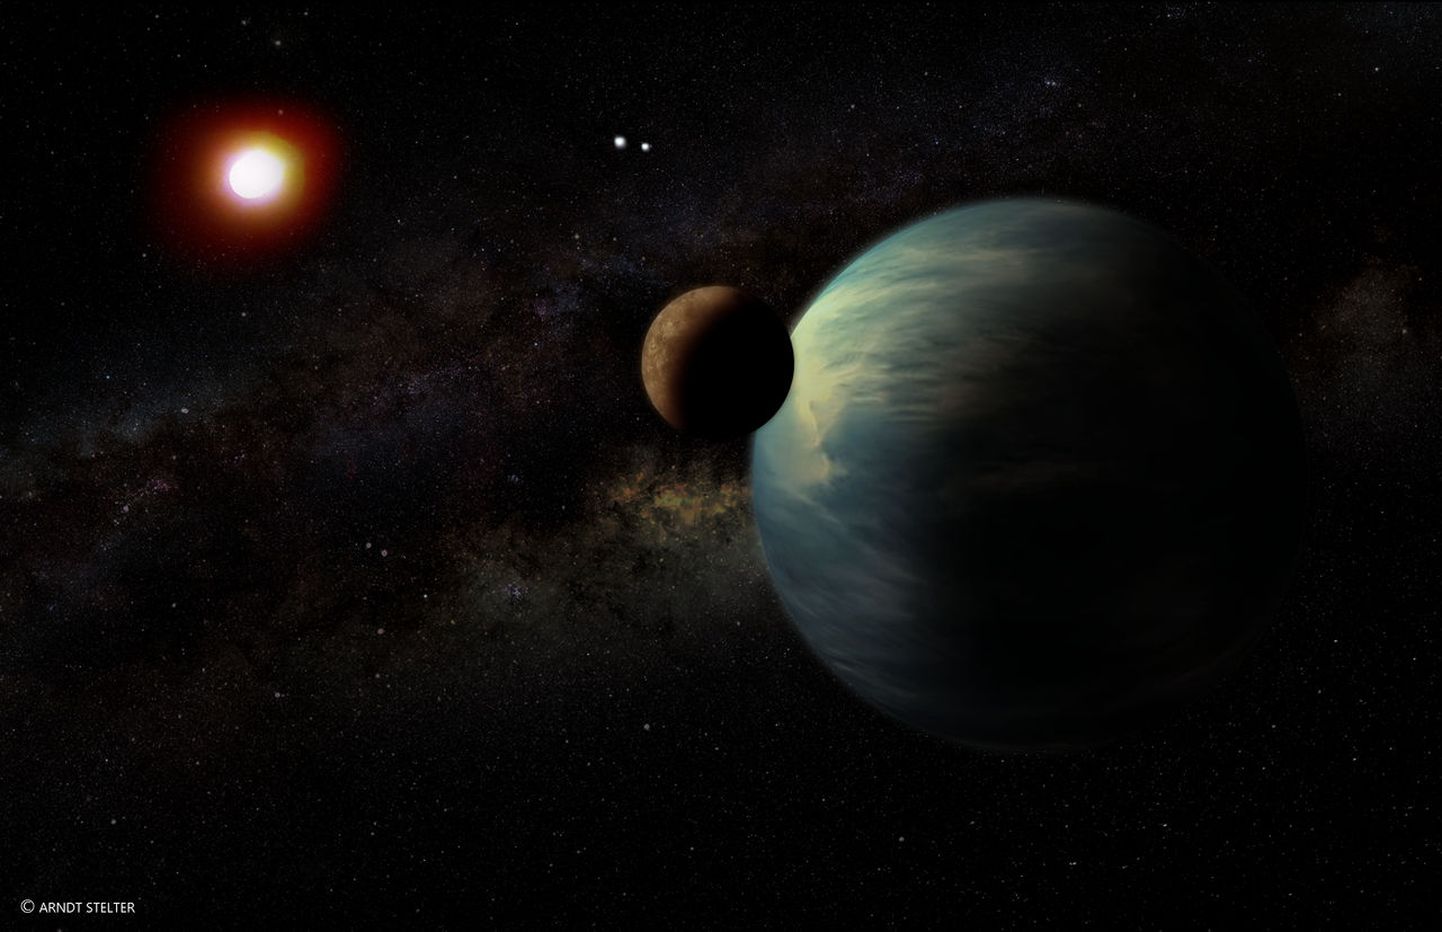 Meist ligi nelja valgusaasta kaugusel asuv Proxima Centaur on lähim täht, kuhu välja pakutud uue tehnoloogiaga võiks kohale jõuda juba sel sajandil. Pildil on kunstniku ettekujutus sellest, mis meid seal praeguste teadmiste põhjal ees ootaks.